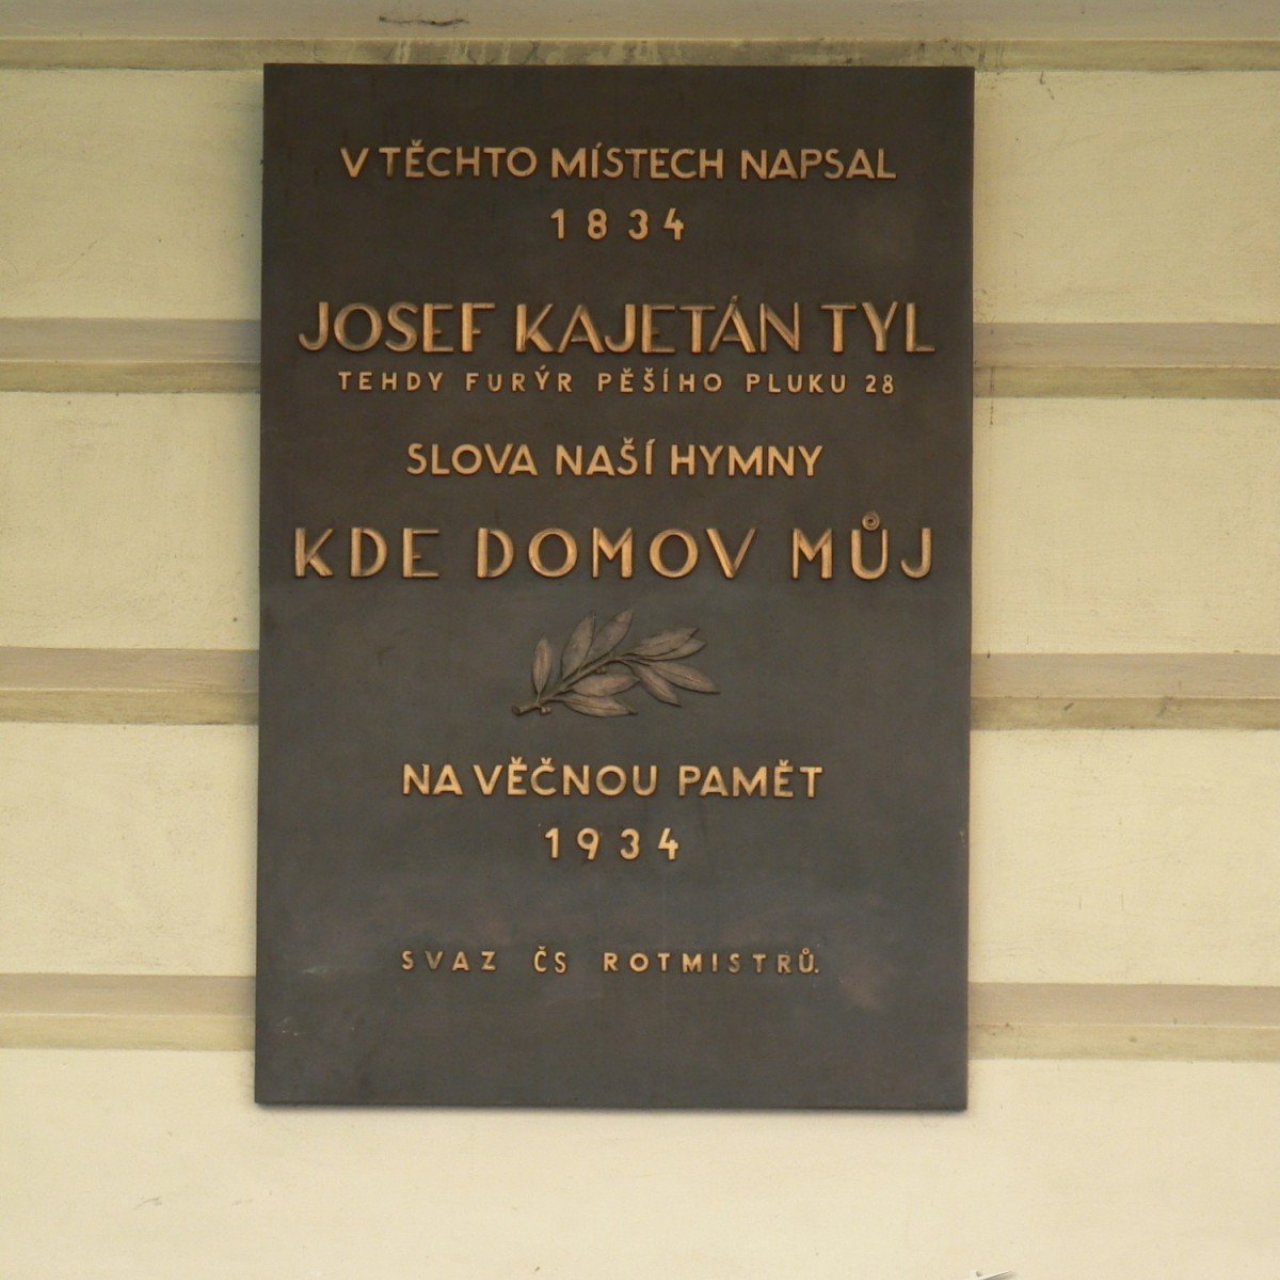 Praha 1 - Náměstí Republiky 1 - pamětní deska Josef Kajetán Tyl